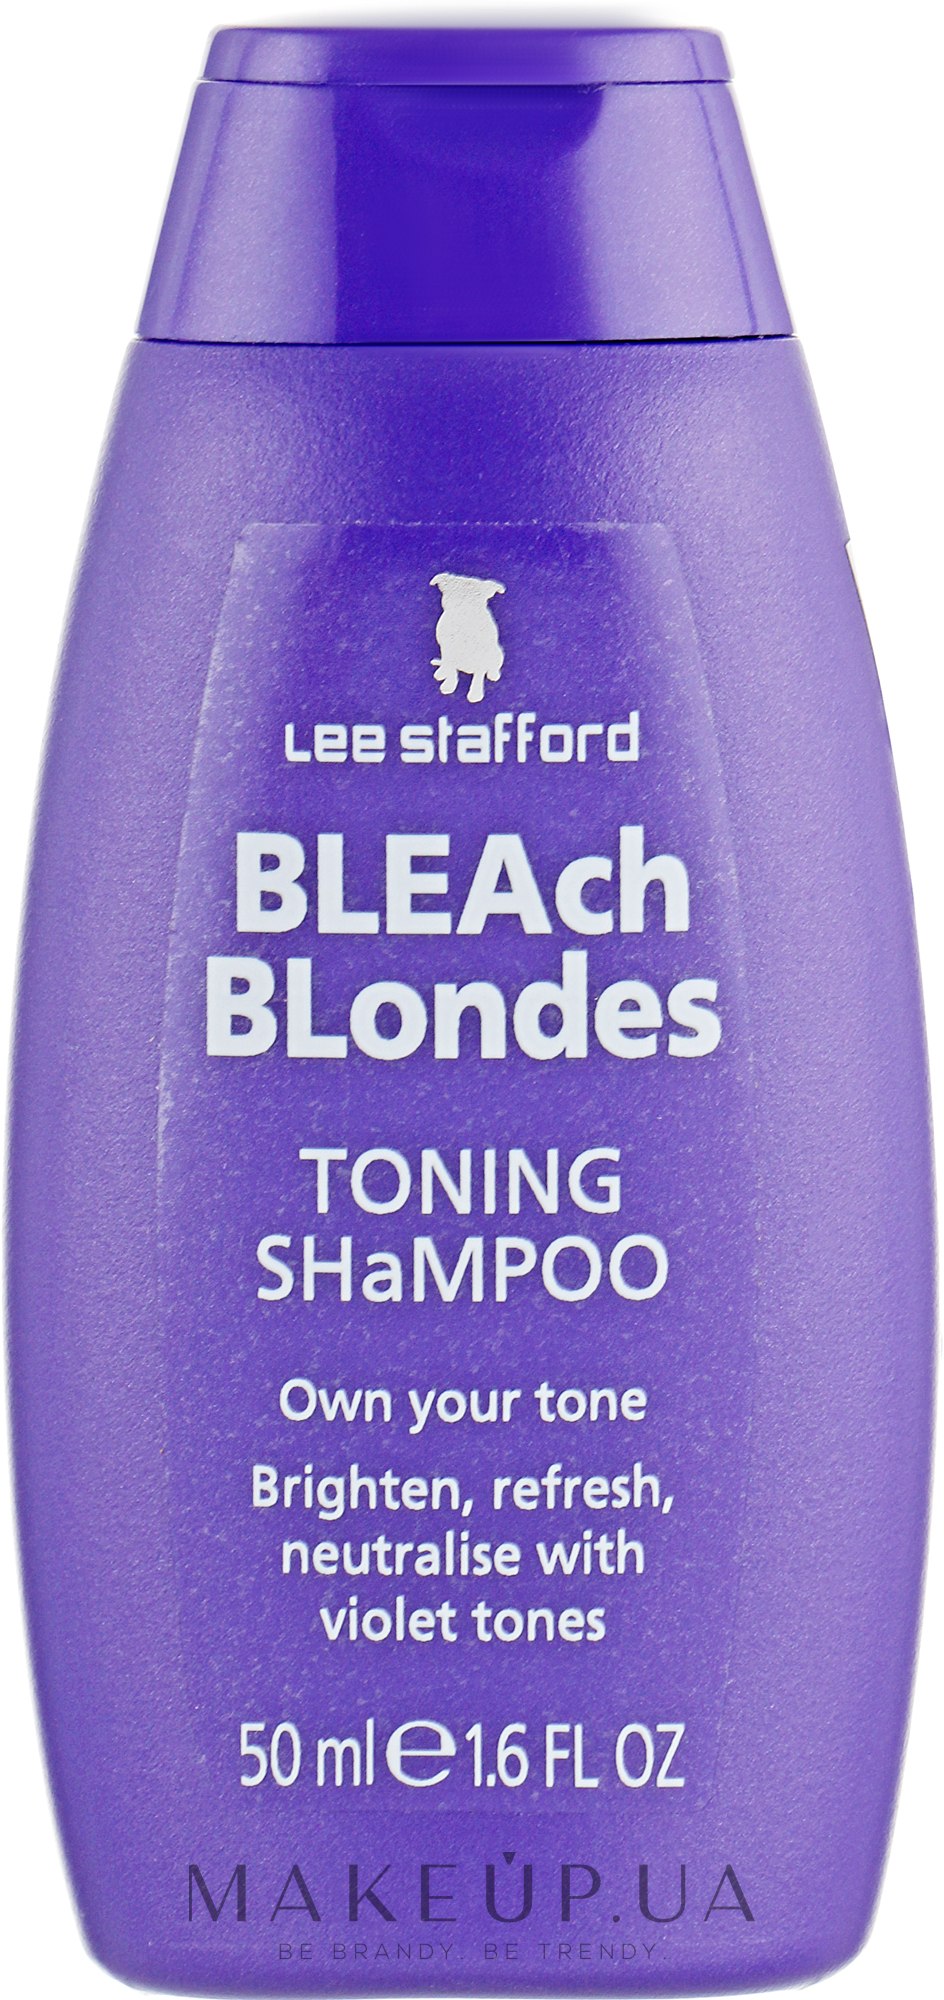 blonda toning shampoo